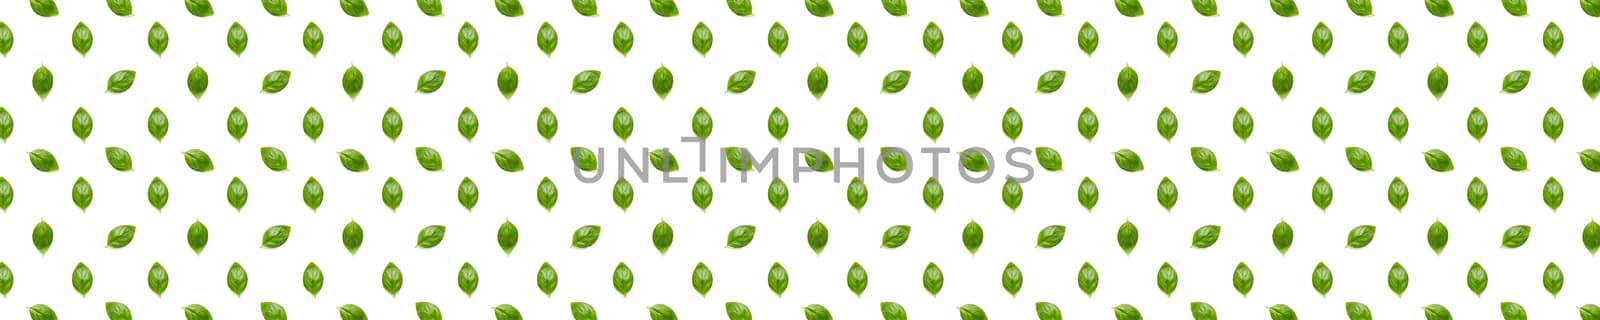 Basil banner. Green leaves of fresh italian basil background on whte backdrop. Basil leaves isolated on white background. Modern background. not pattern